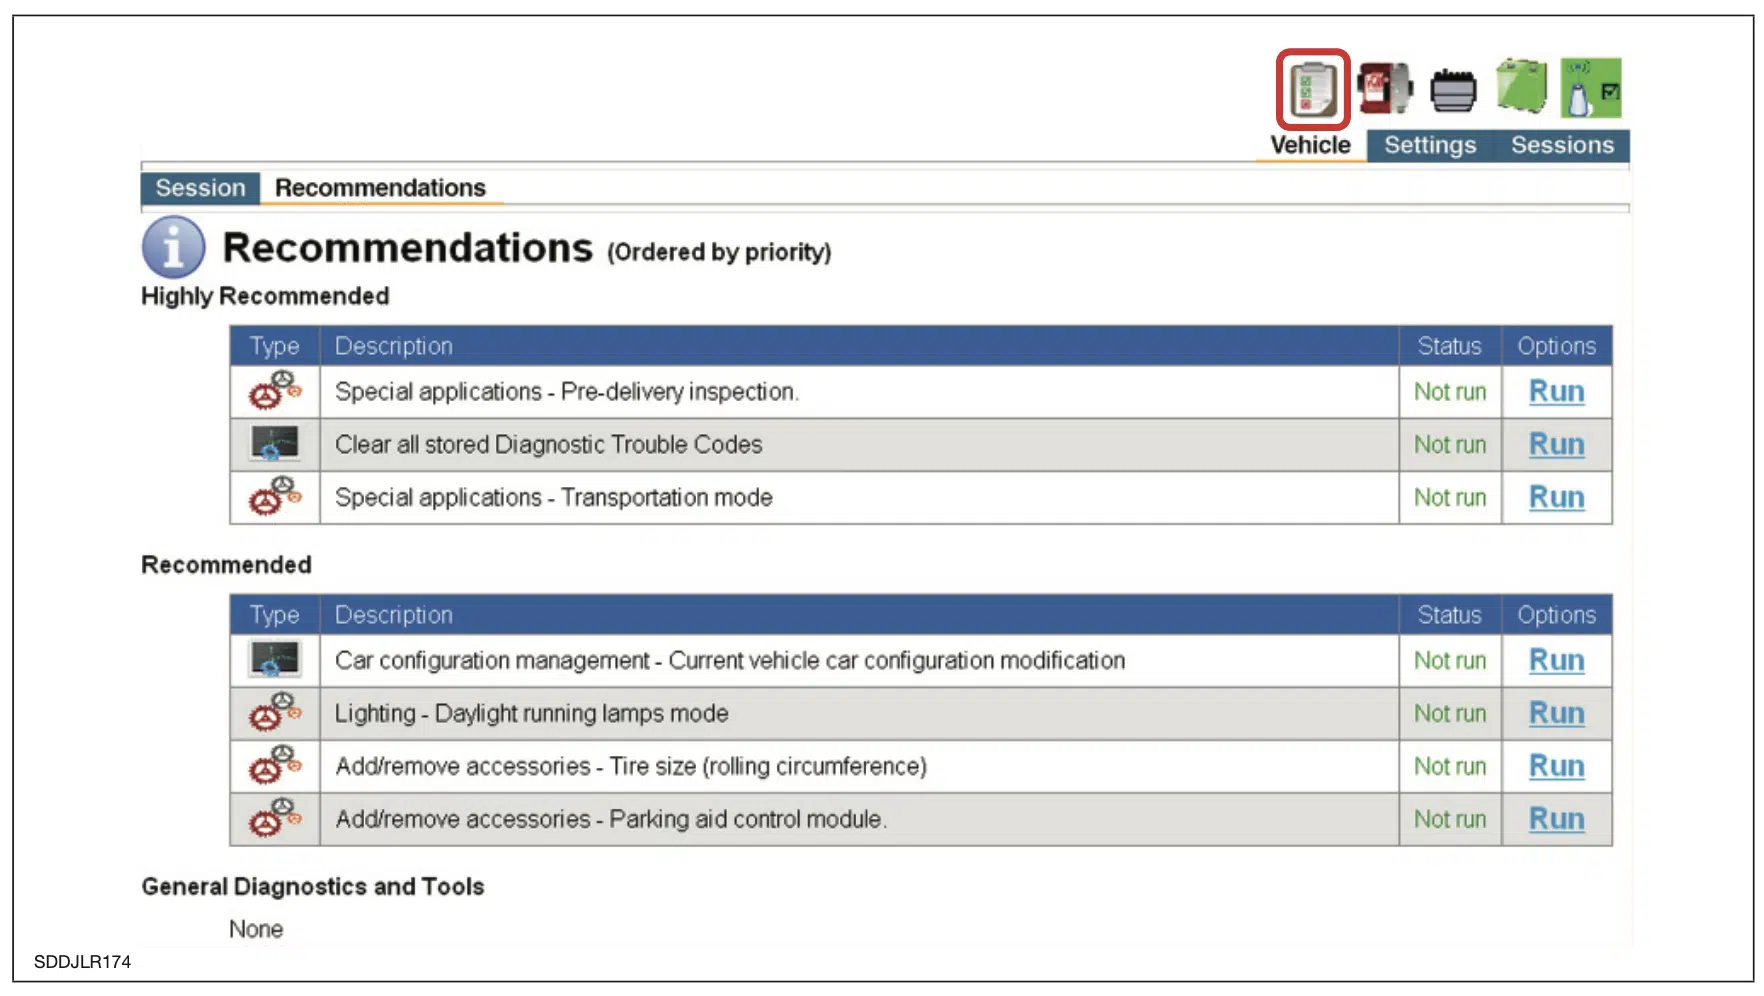 Capture d'écran de la session du logiciel JLR SDD pour les actions recommandées après le rapport sur les symptômes du véhicule